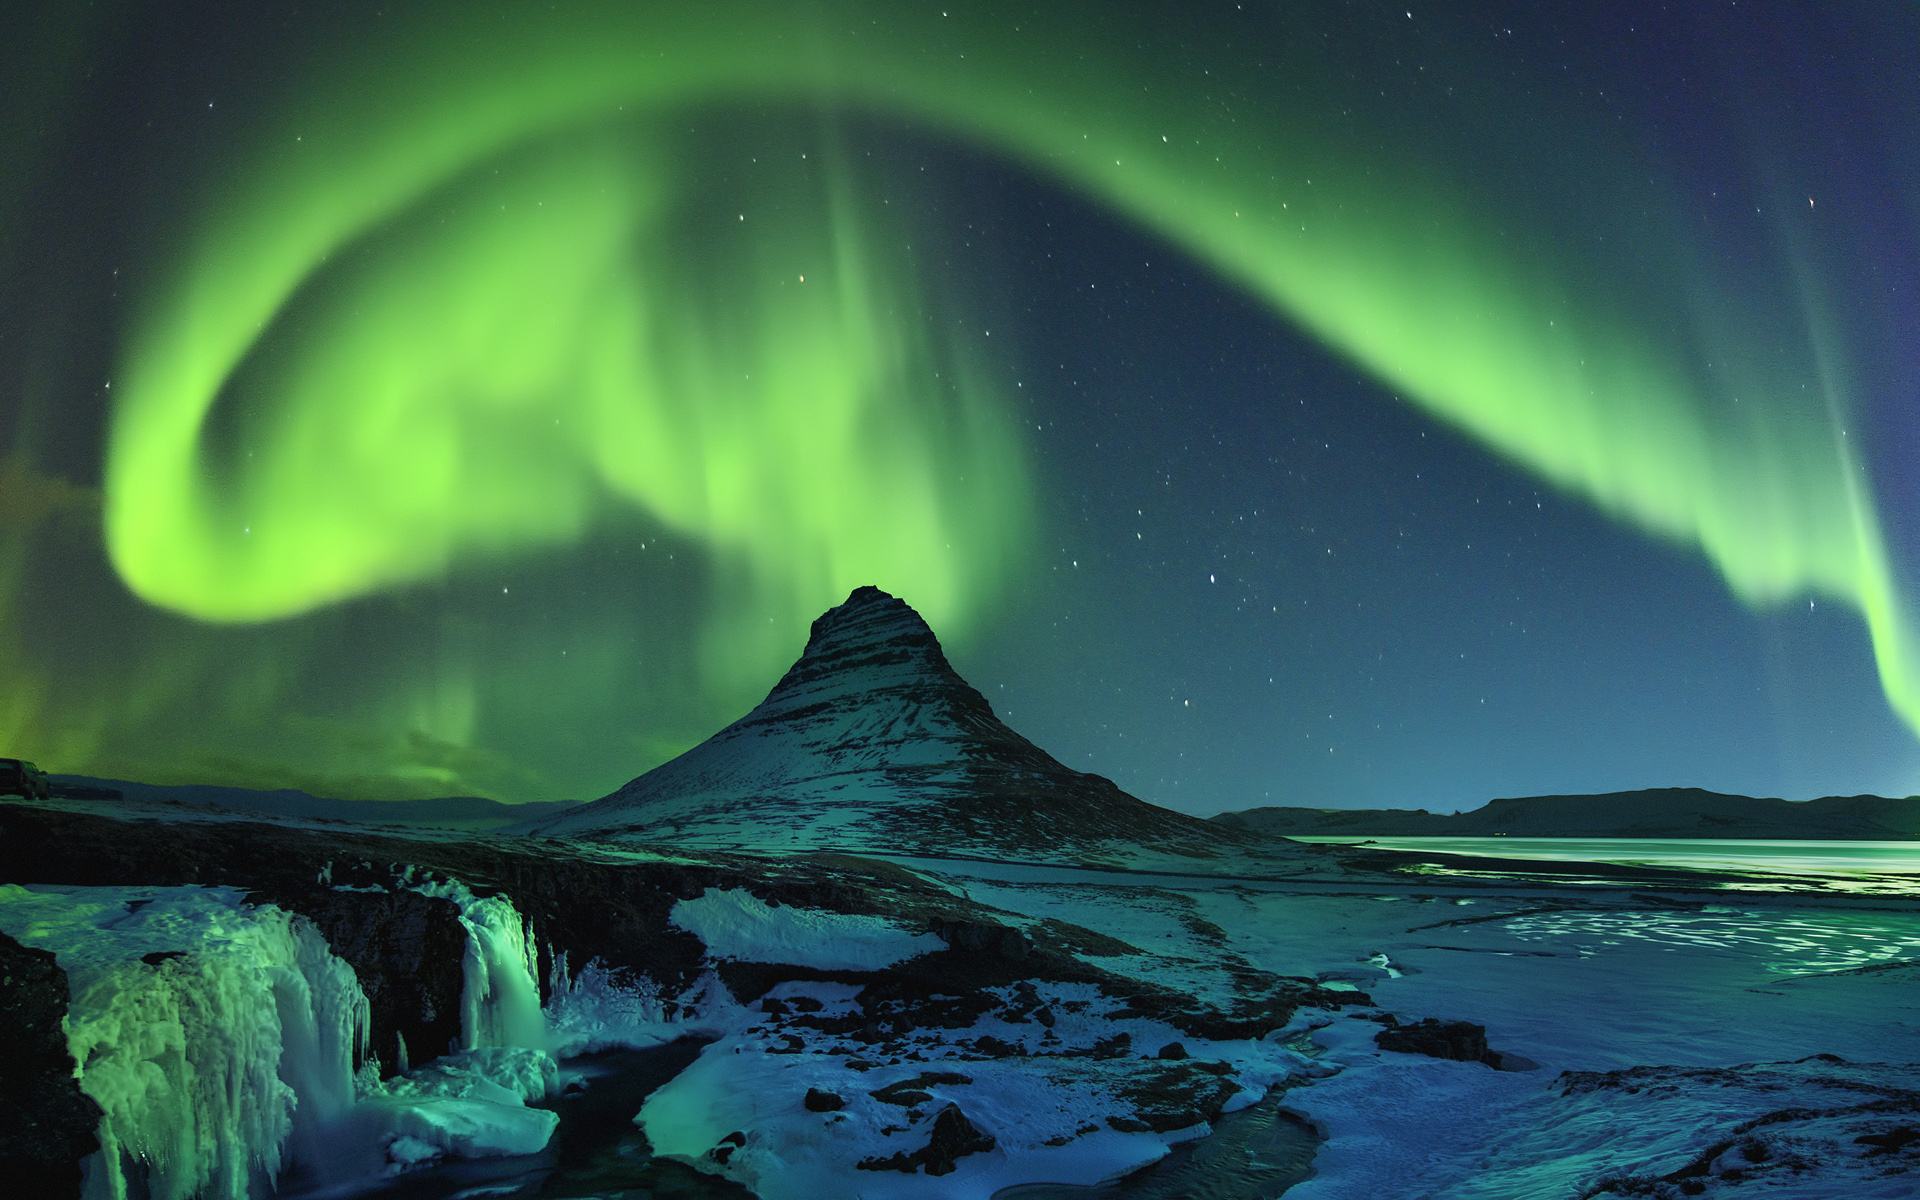 在冰岛追北极光的最佳时间、地点和拍摄攻略 | Nordical 冰岛旅行